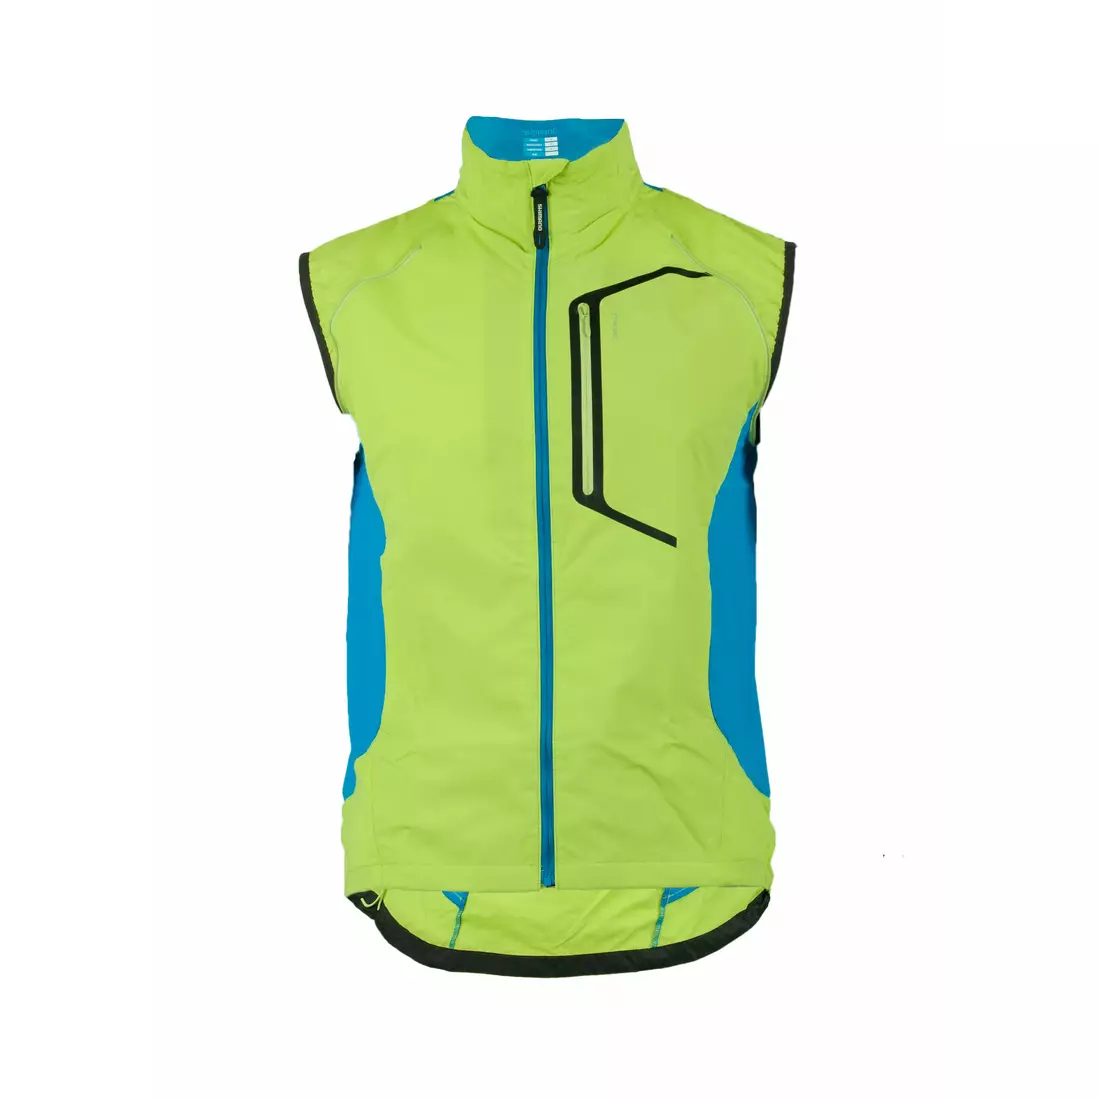 Cyklistická bunda SHIMANO HYBRID, odnímatelné rukávy, zelená CWJATSMS12MR